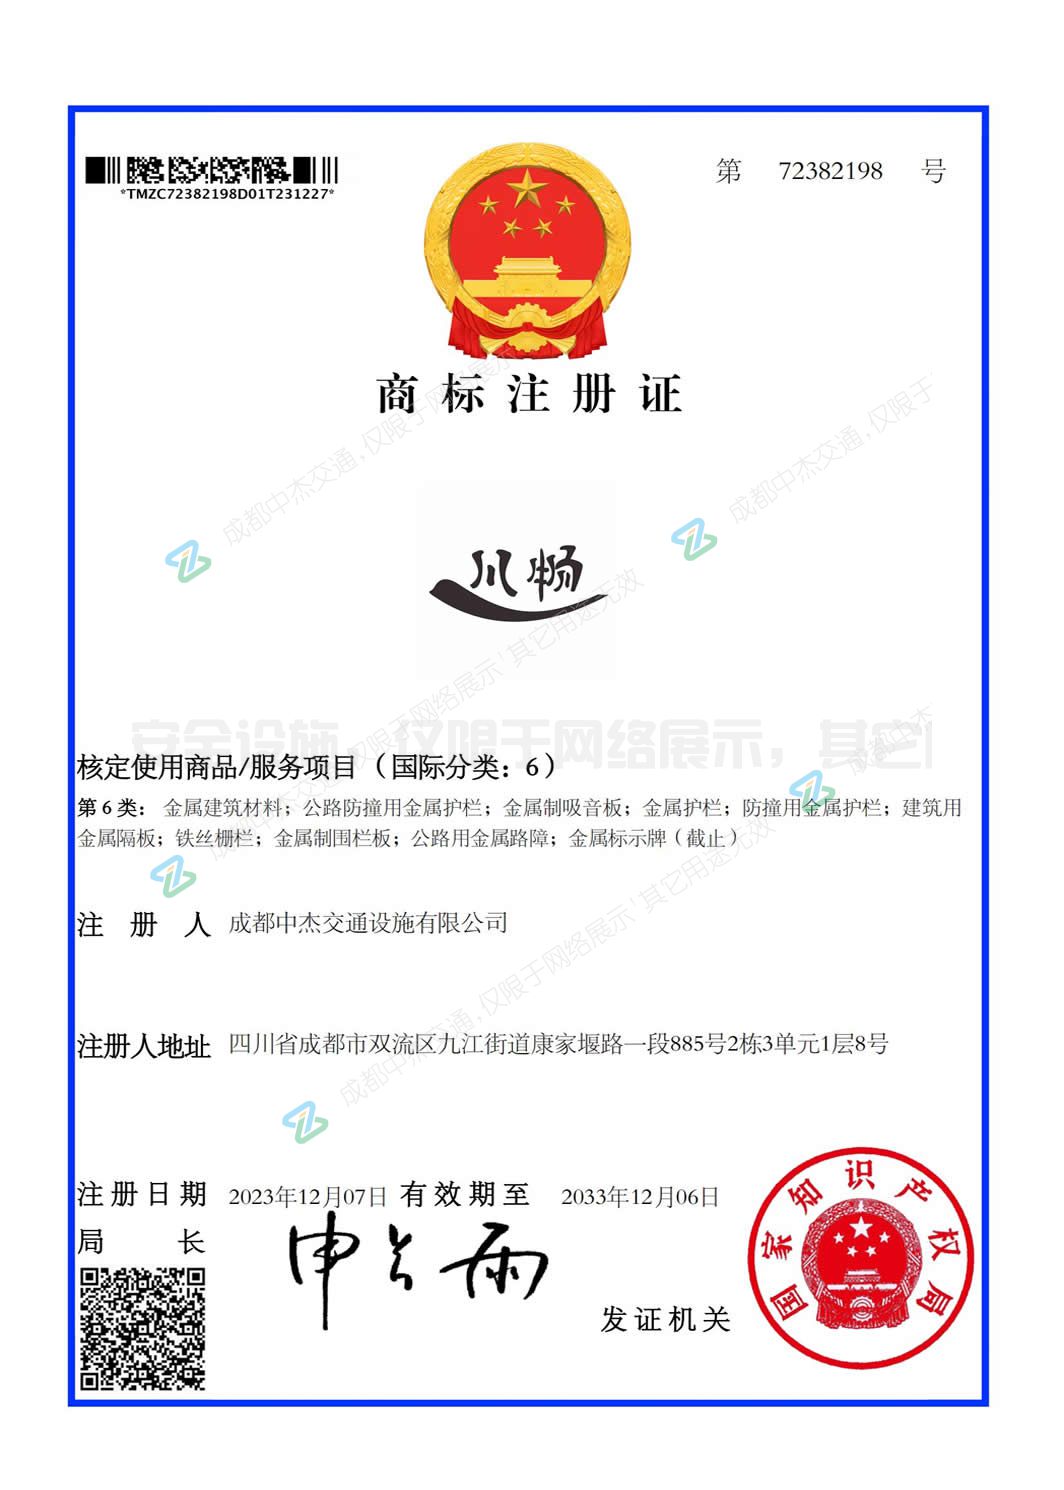 中杰交通公司成功获得川畅注册商标证书(图1)